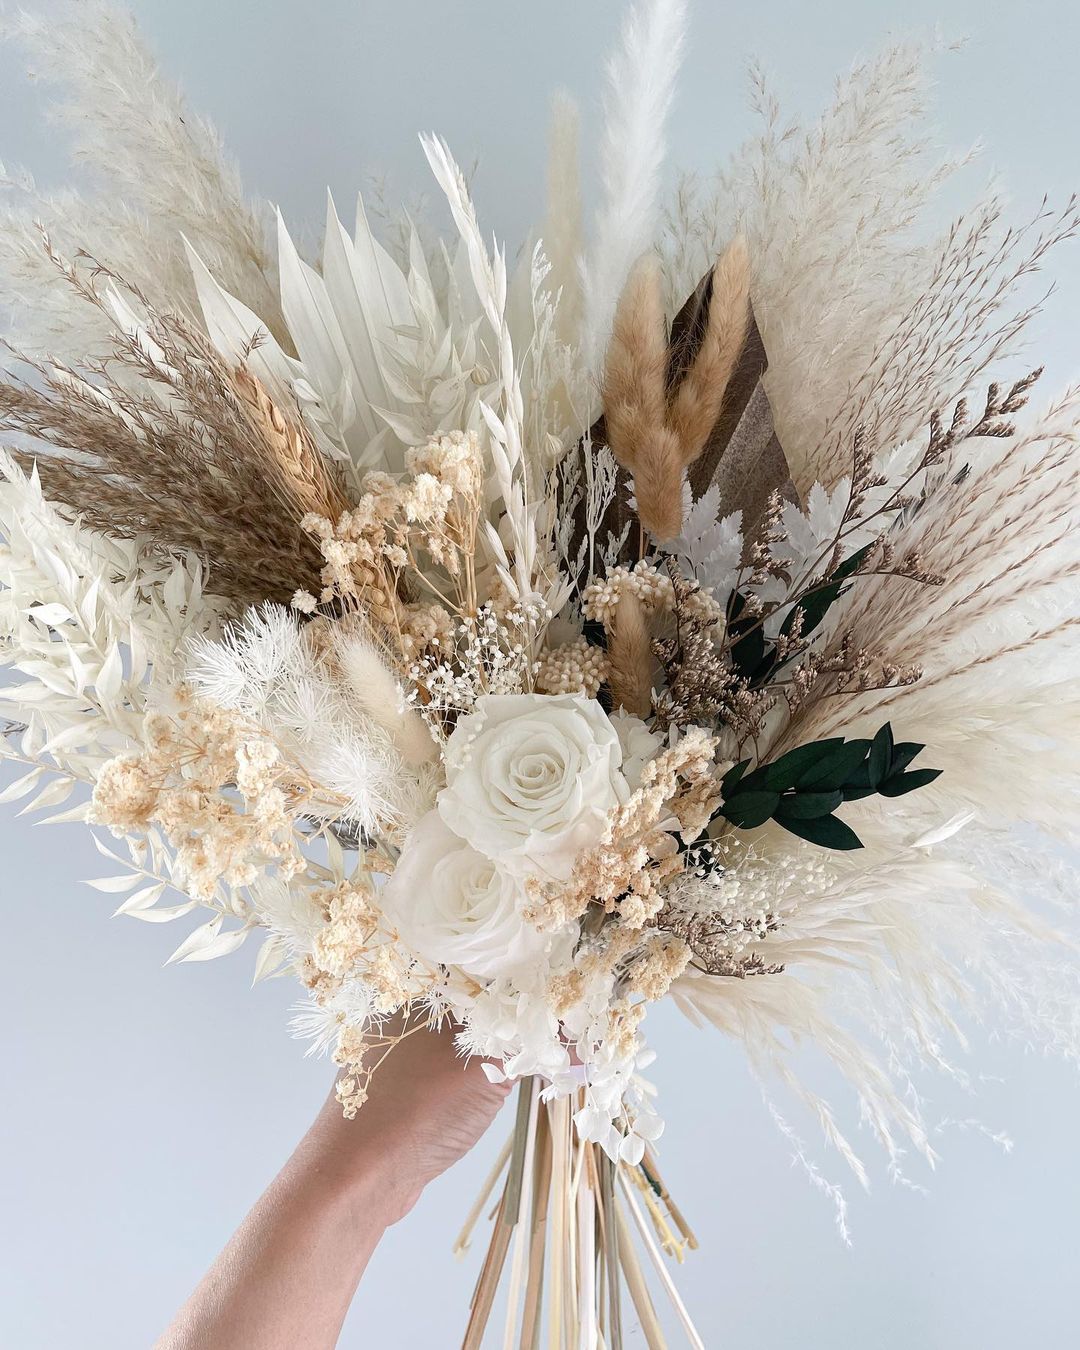 boho pampas grass dried flower wedding bouquet via pampasoutlet